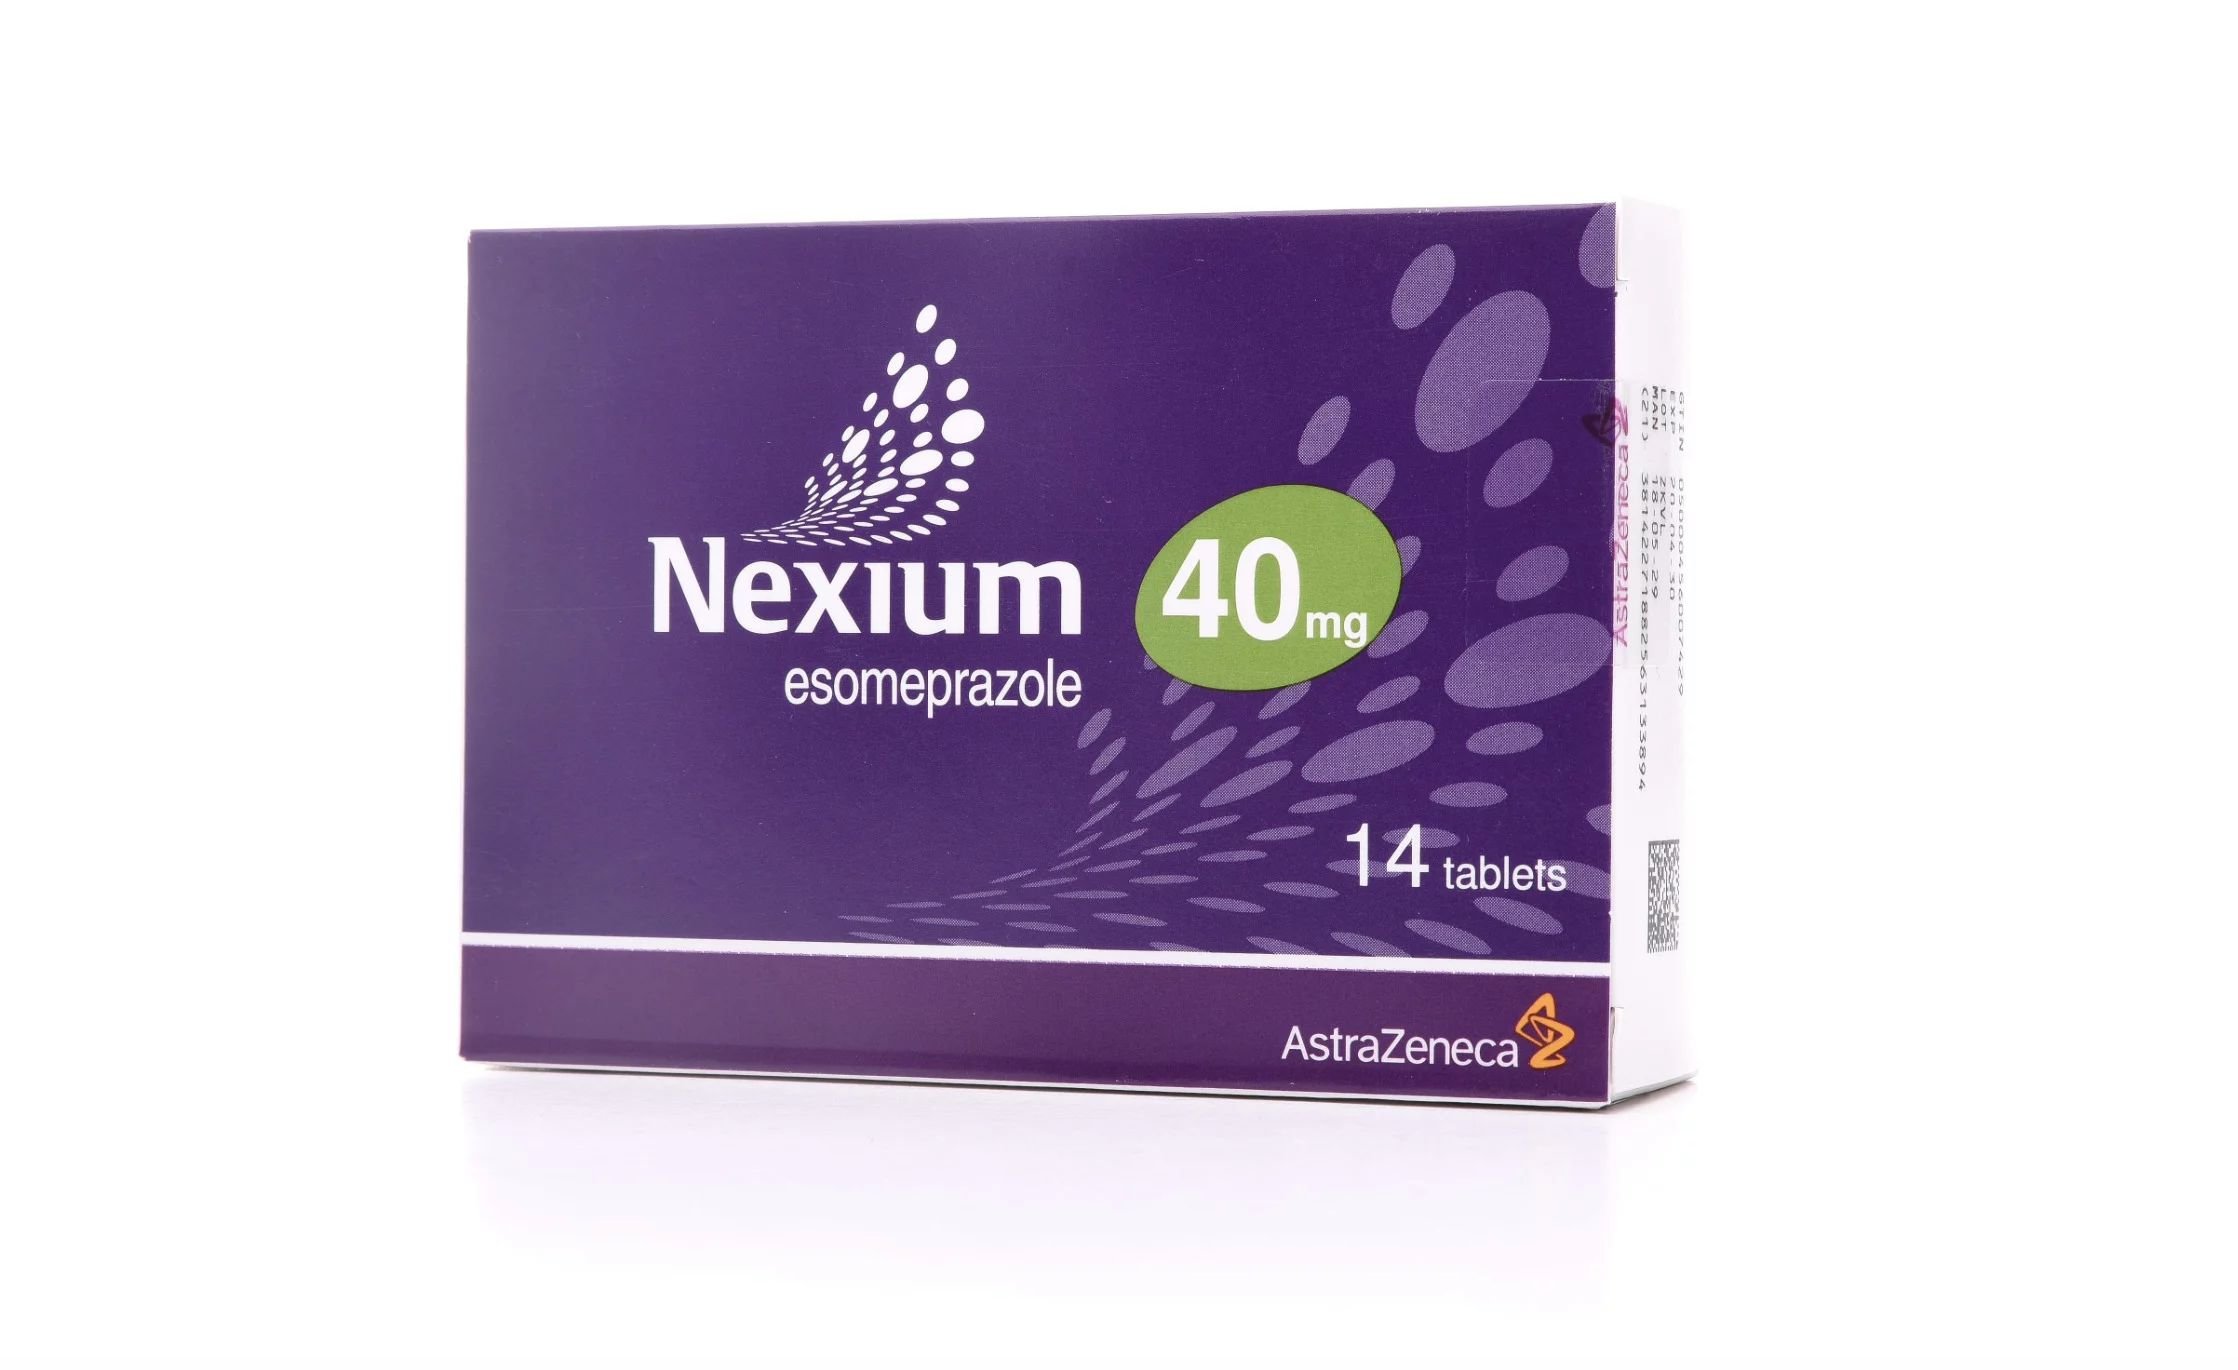 nexium yan etkileri nexium ne ilacı nexium nasıl kullanılır nexium 40 mg nedir 